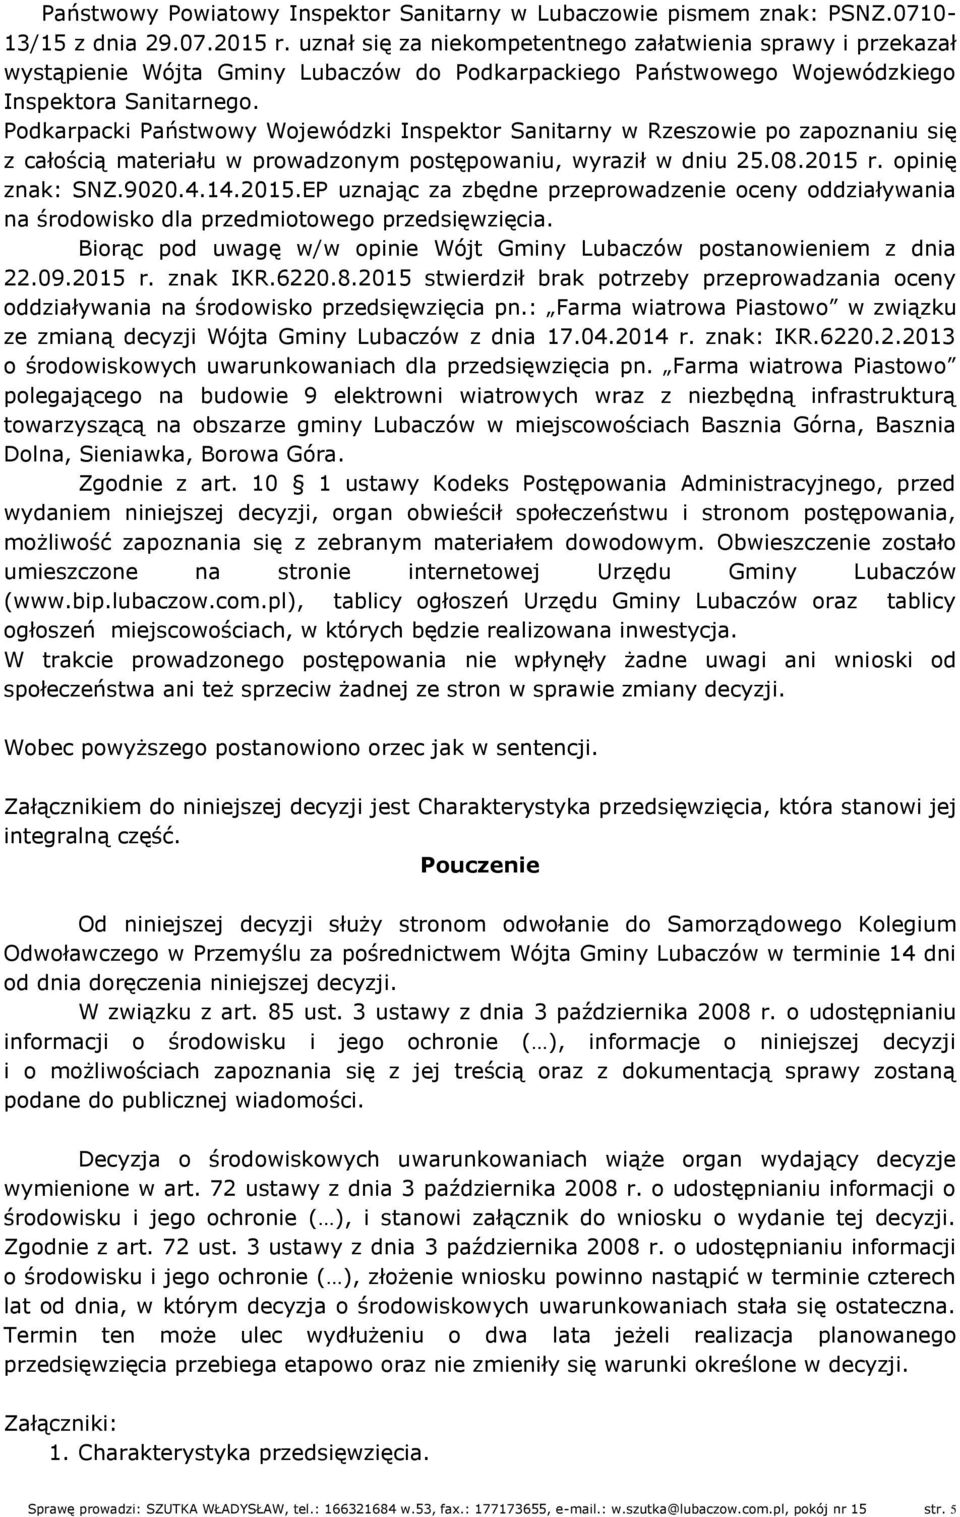 Podkarpacki Państwowy Wojewódzki Inspektor Sanitarny w Rzeszowie po zapoznaniu się z całością materiału w prowadzonym postępowaniu, wyraził w dniu 25.08.2015 